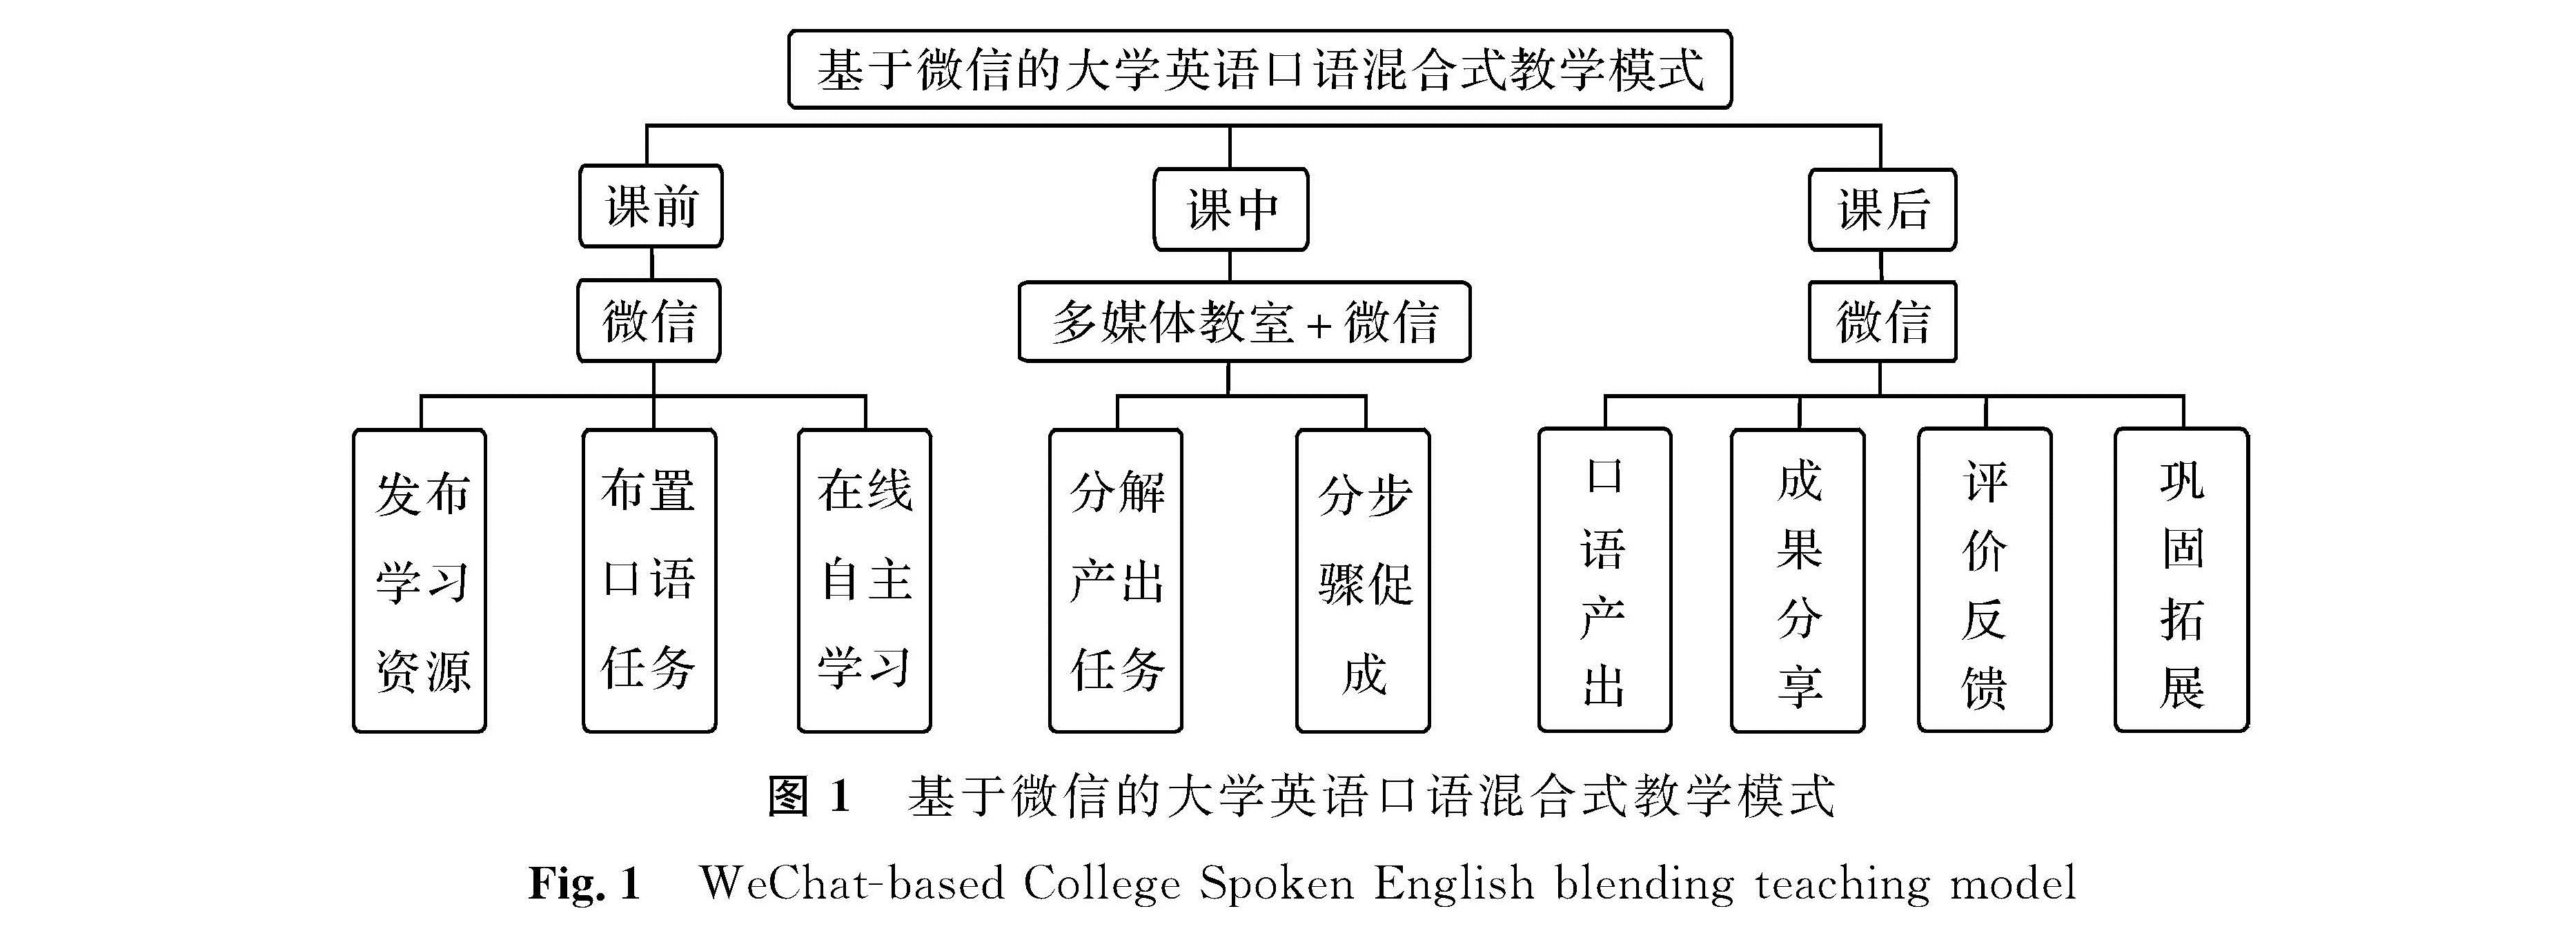 图1 基于微信的大学英语口语混合式教学模式<br/>Fig.1 WeChat-based College Spoken English blending teaching model